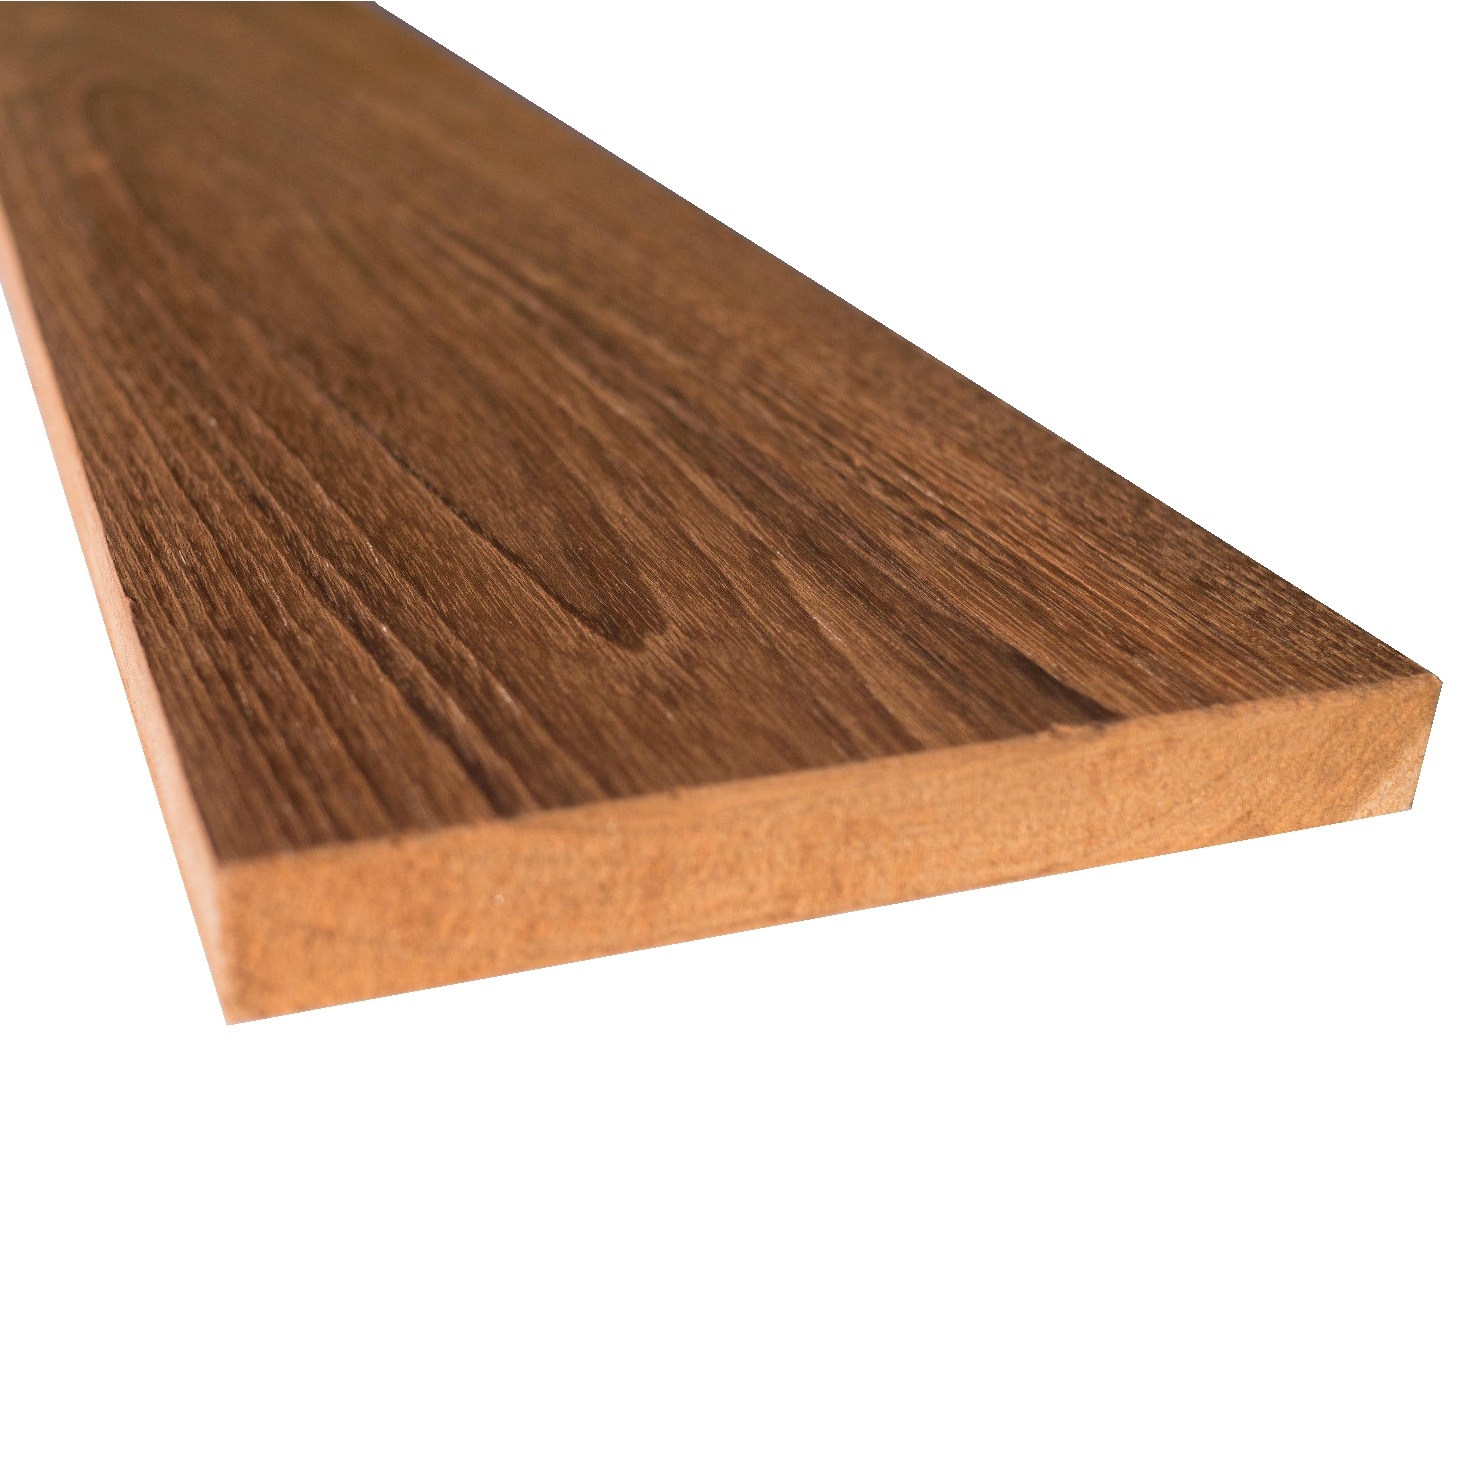 Tavola legno Teak piallata mm 21 x 165 x 2400